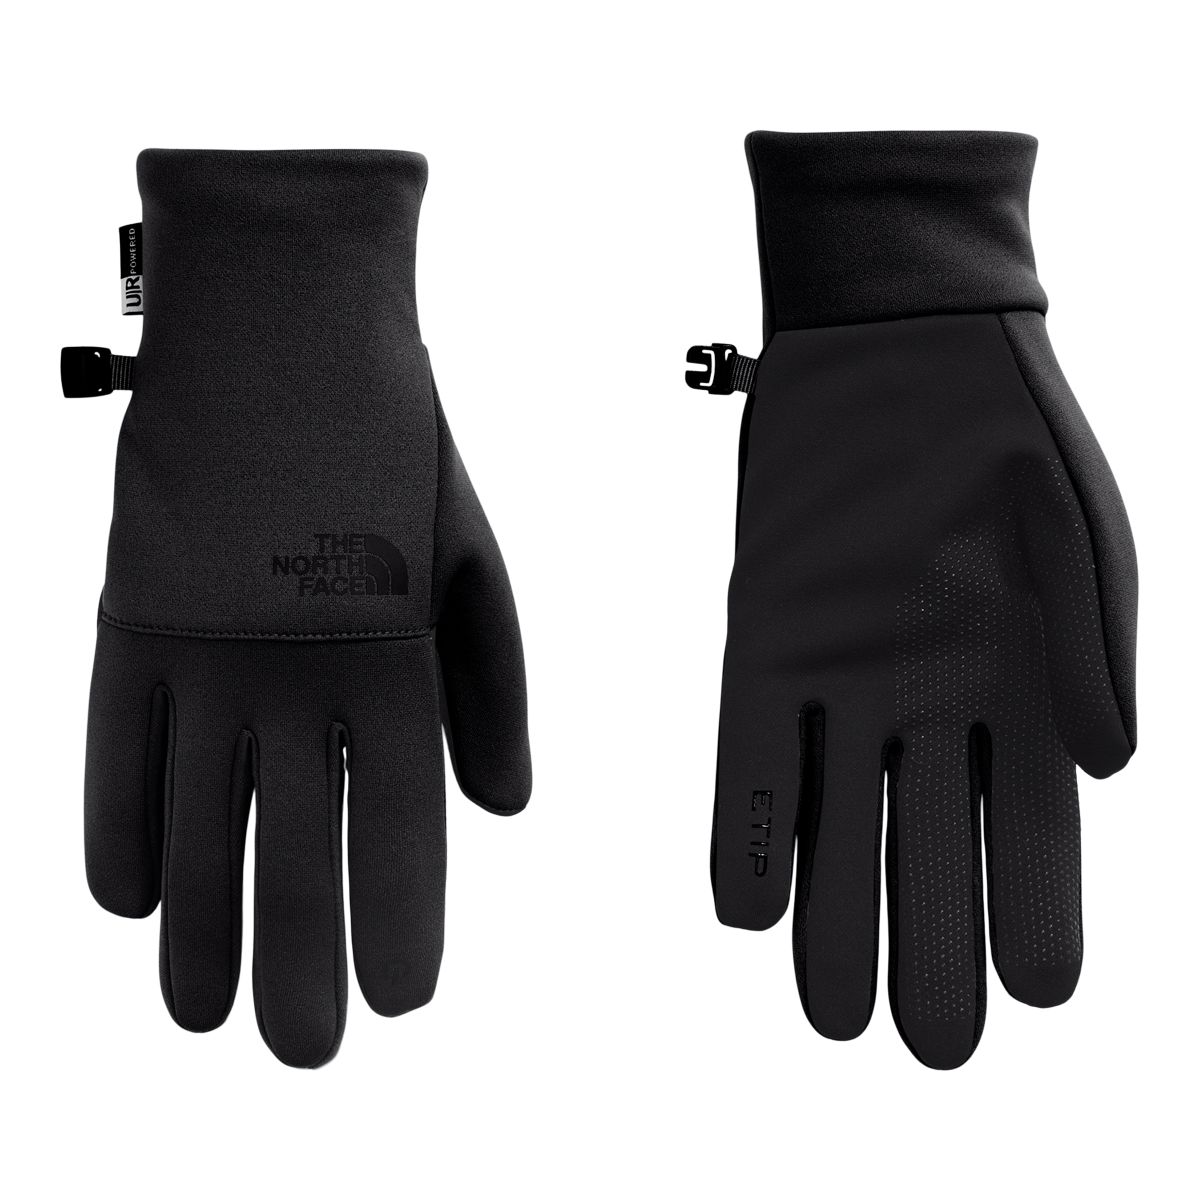 The North Face Men's Plg Flashdry Big Logo Gloves